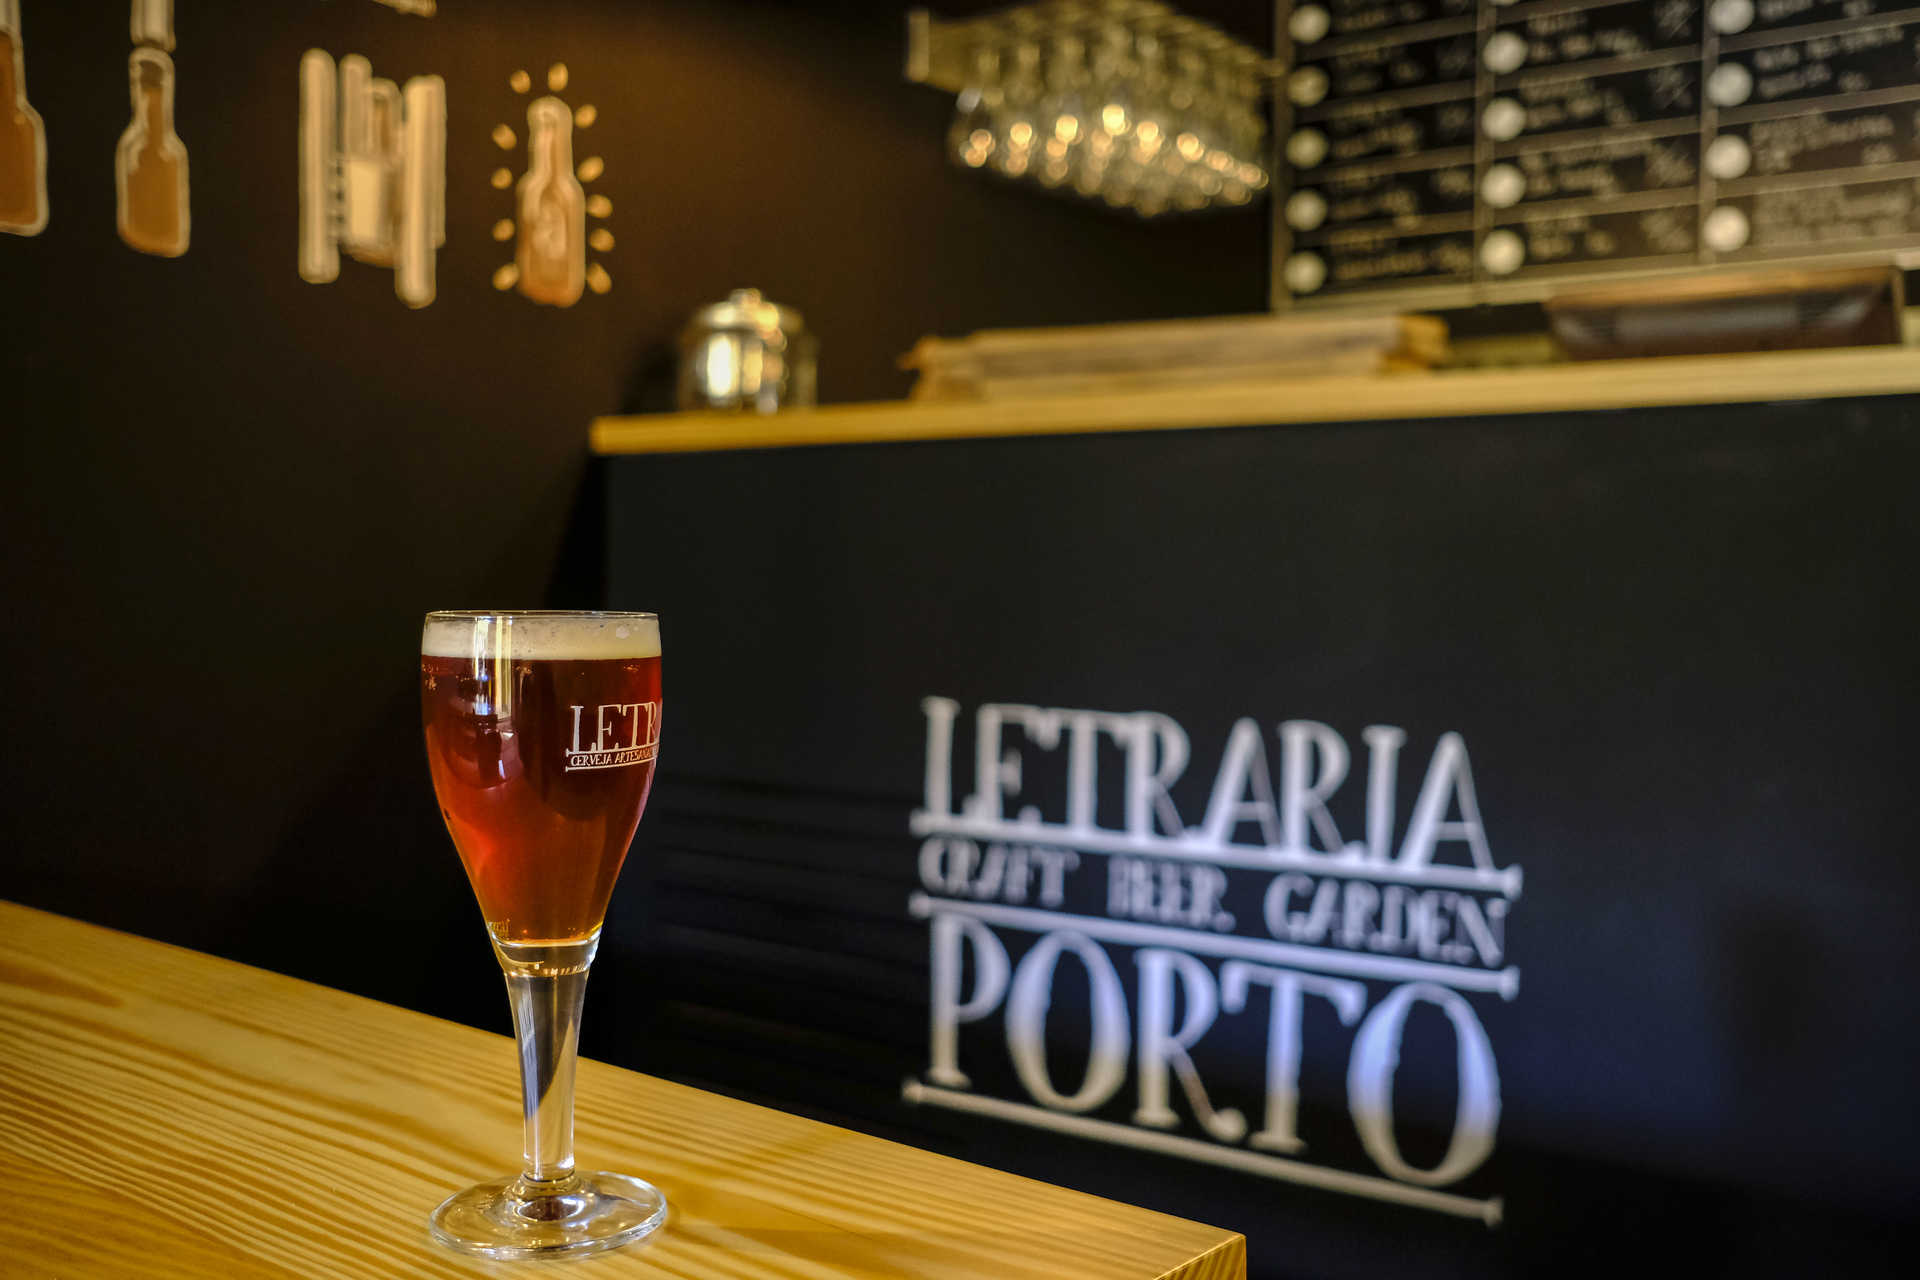 Letraria – Craft Beer Garden Porto